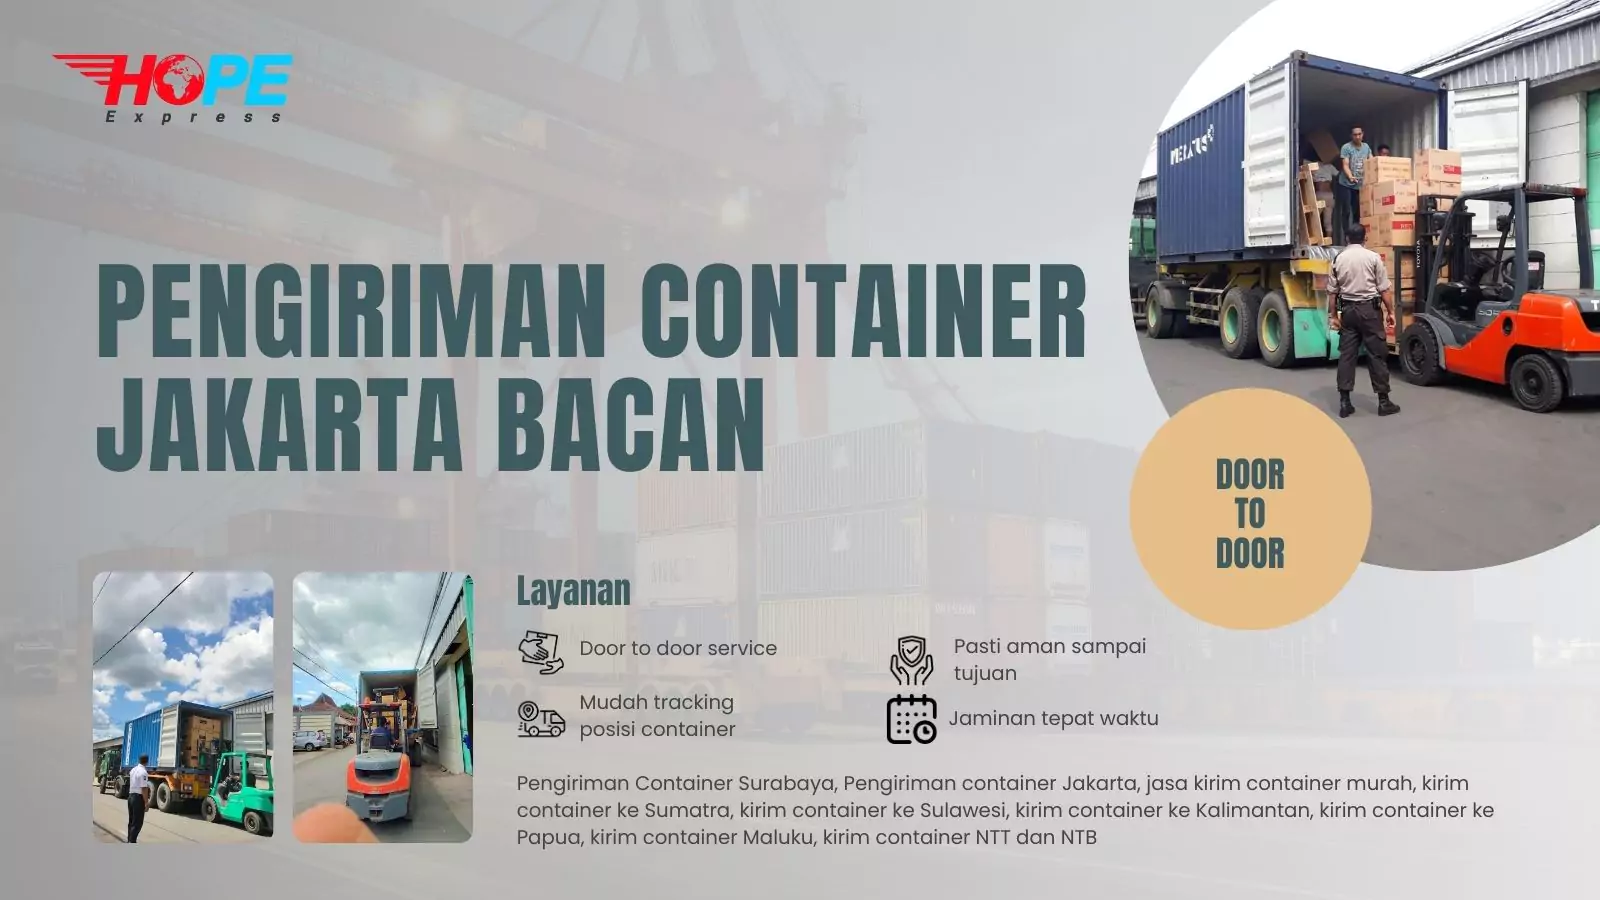 Pengiriman Container Jakarta Bacan